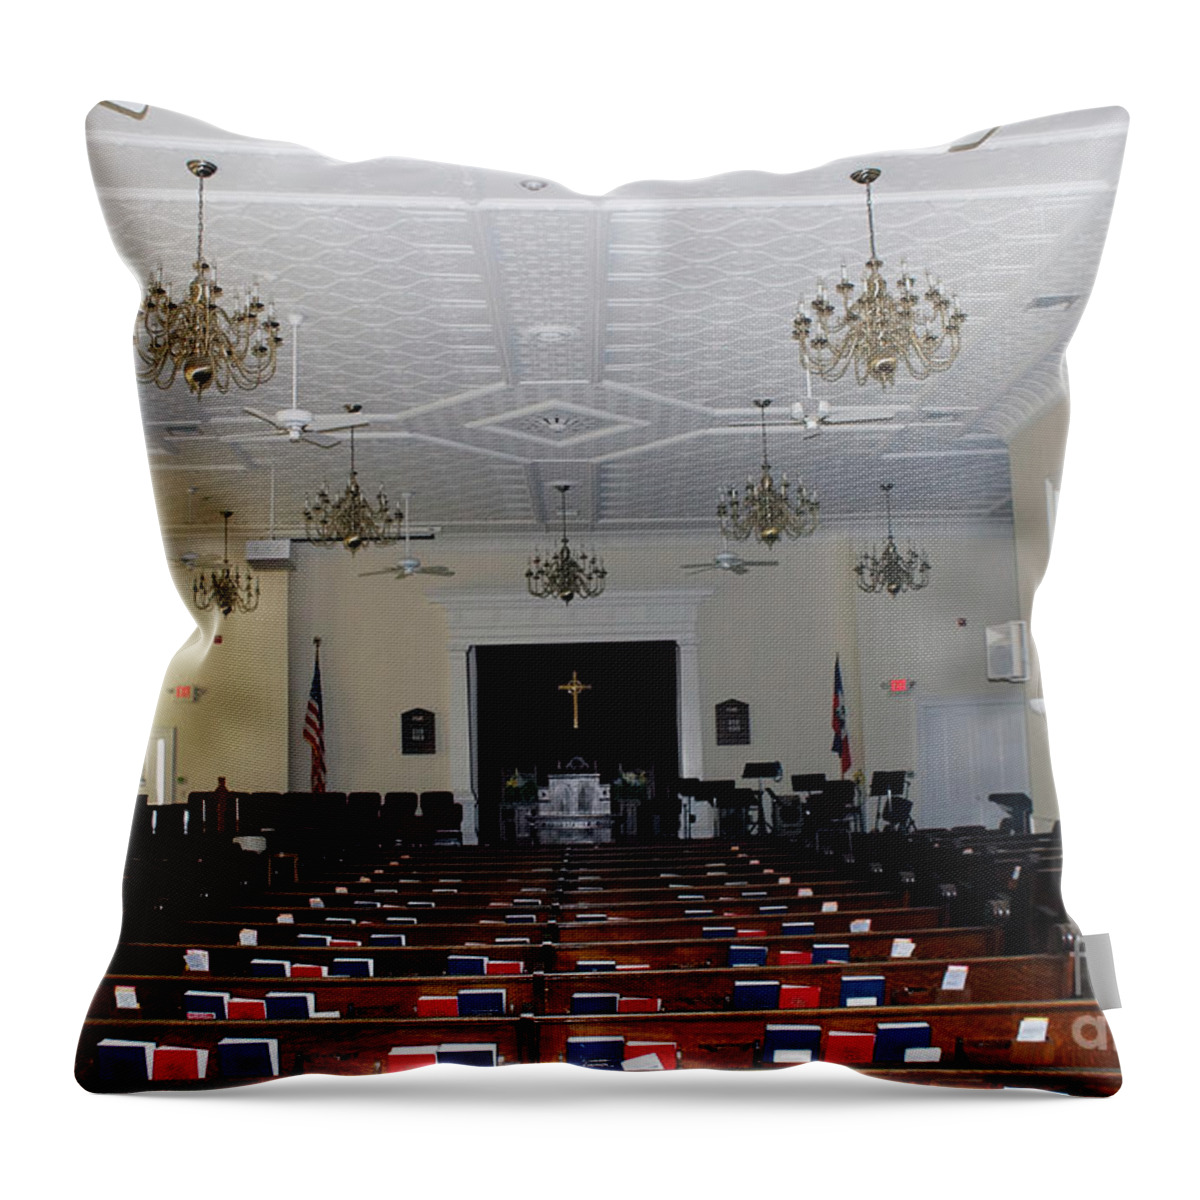 The Mattituck Presbyterian Church Throw Pillow featuring the photograph Mattituck Presbyterian Church #1 by Steven Spak